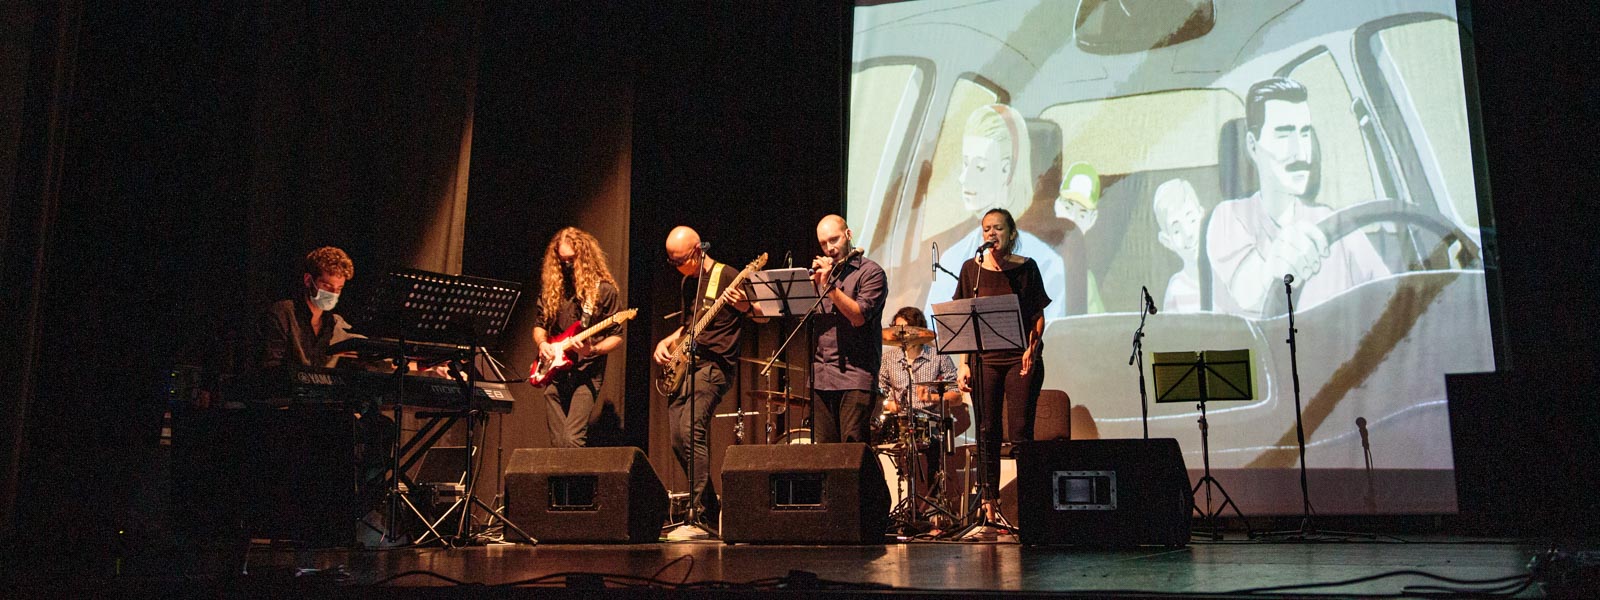 Musicisti Examina, collaboratori e Collettivo The Lab durante lo spettacolo Gaia a Udine